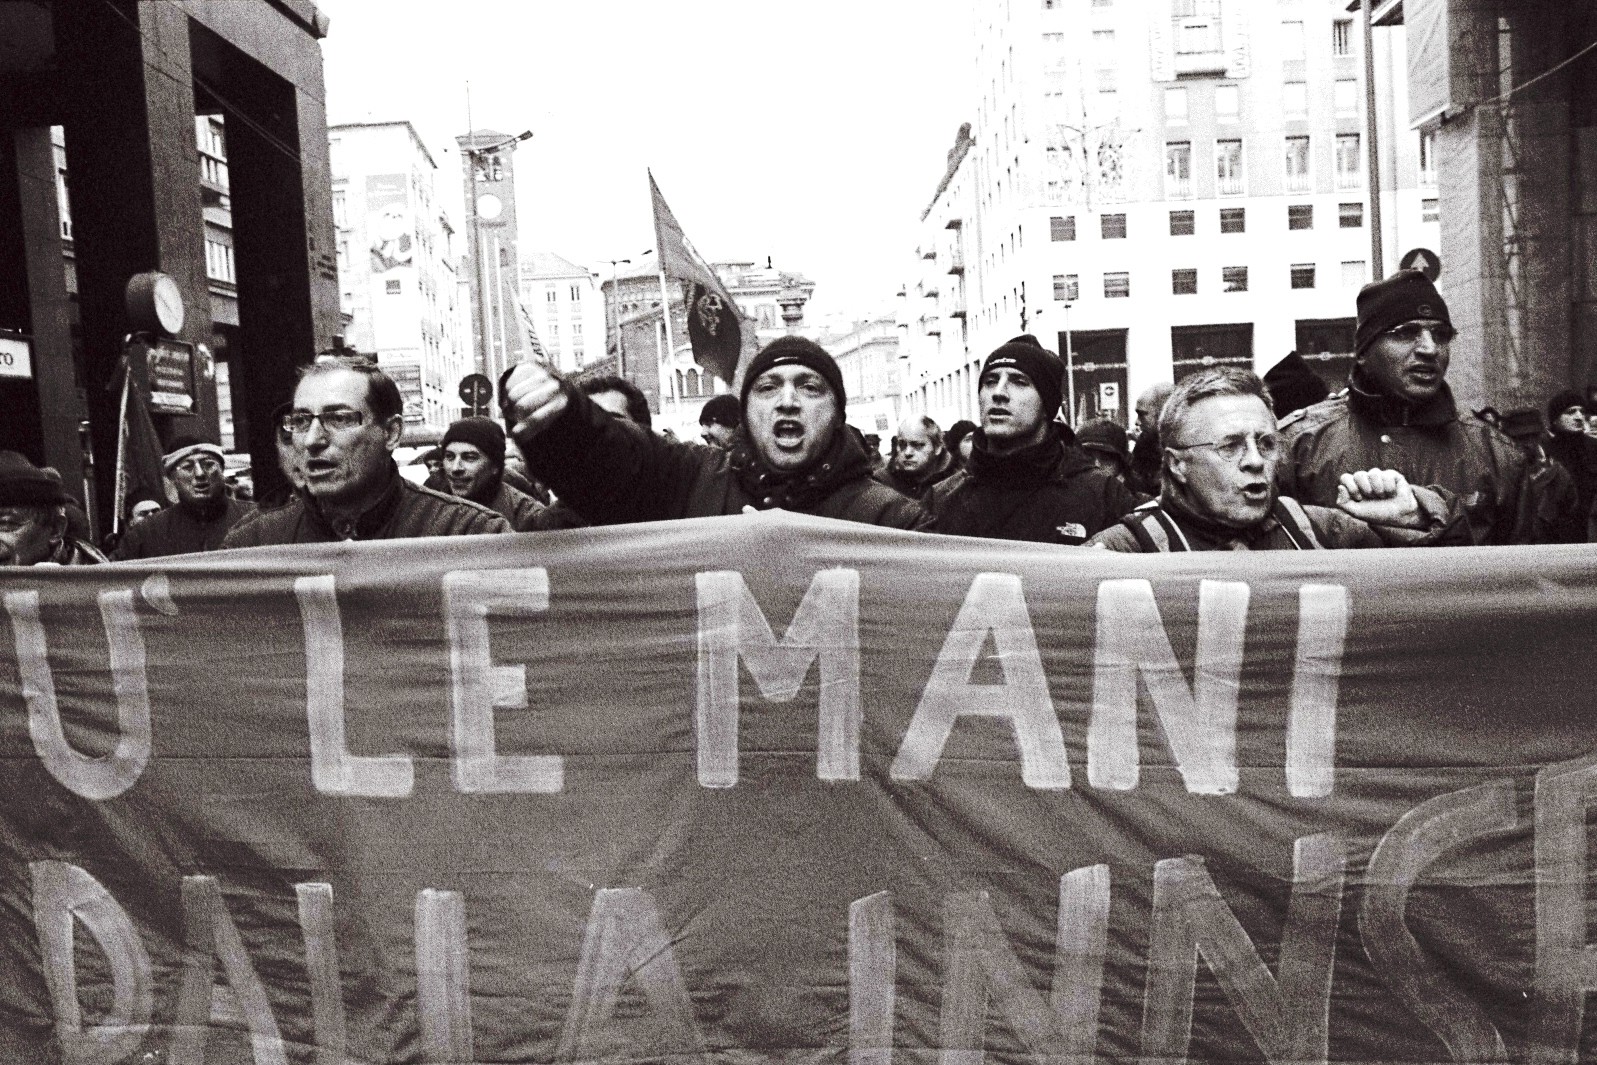 פועלים לארגון עובדים. שביתה במילנו (צילום: גייטנו פורנלי CC BY 2.0) 